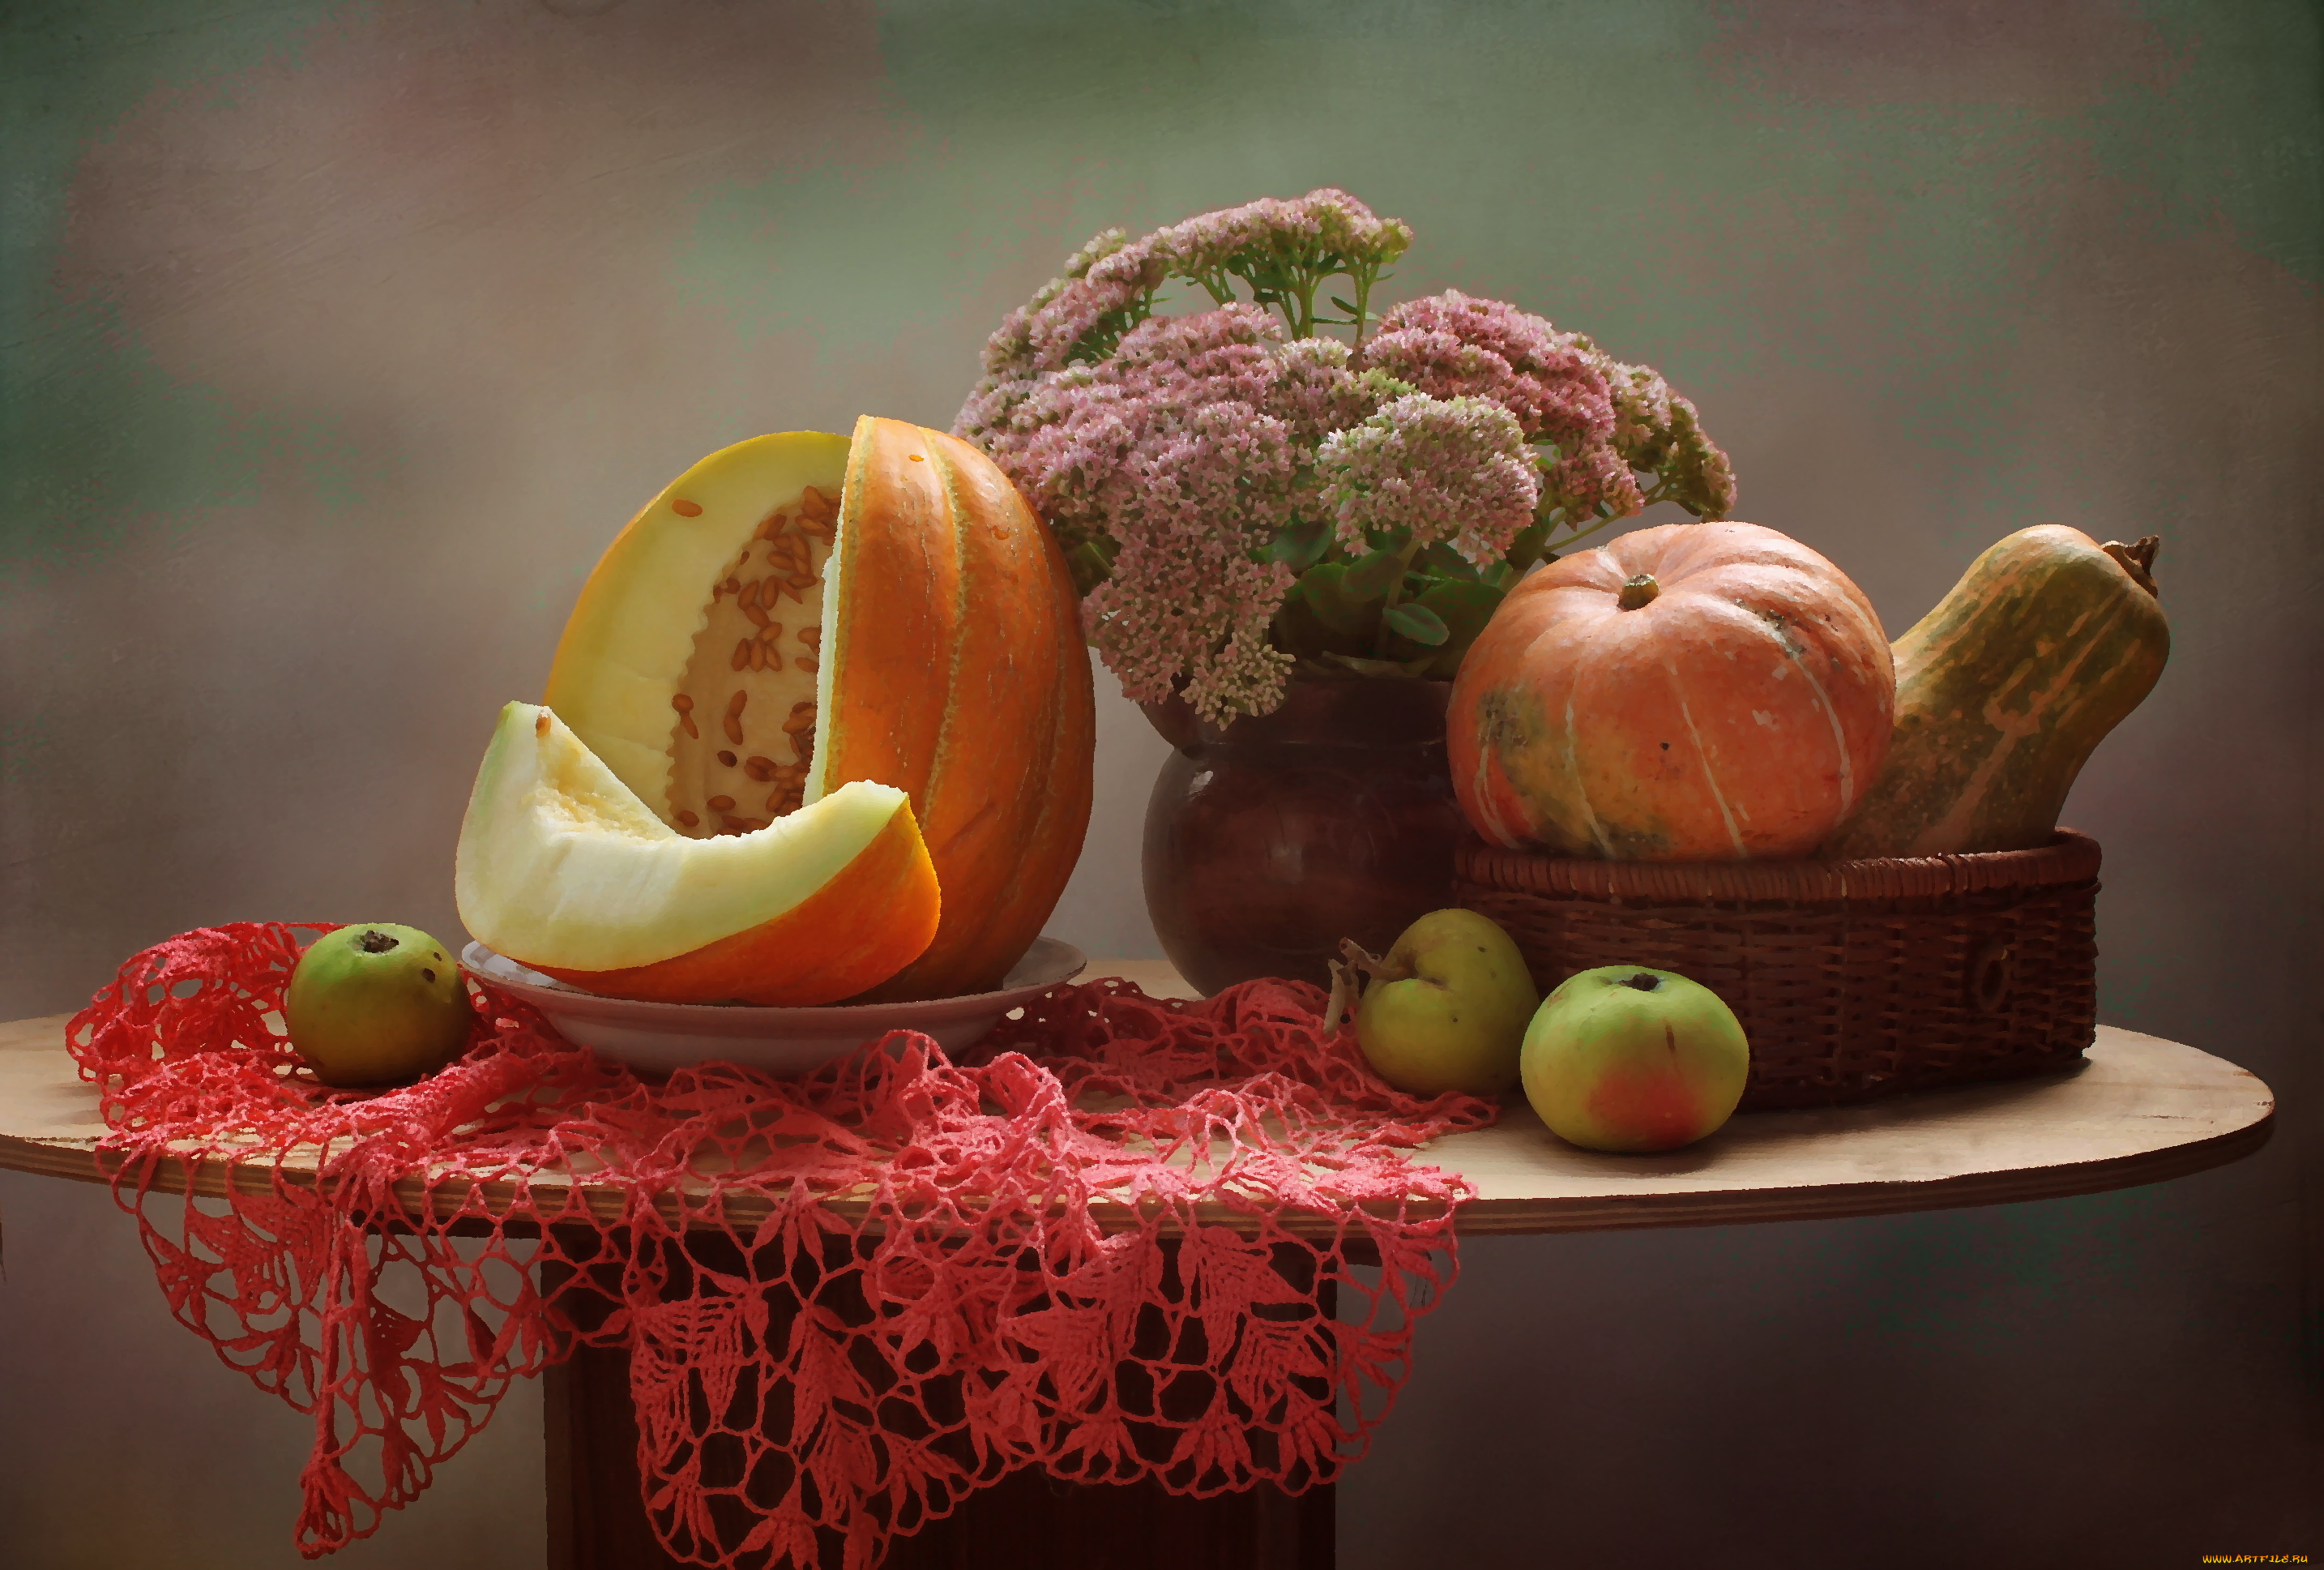 рисованное, еда, осень, тыква, очиток, яблоки, натюрморт, дыня, цветы, сентябрь